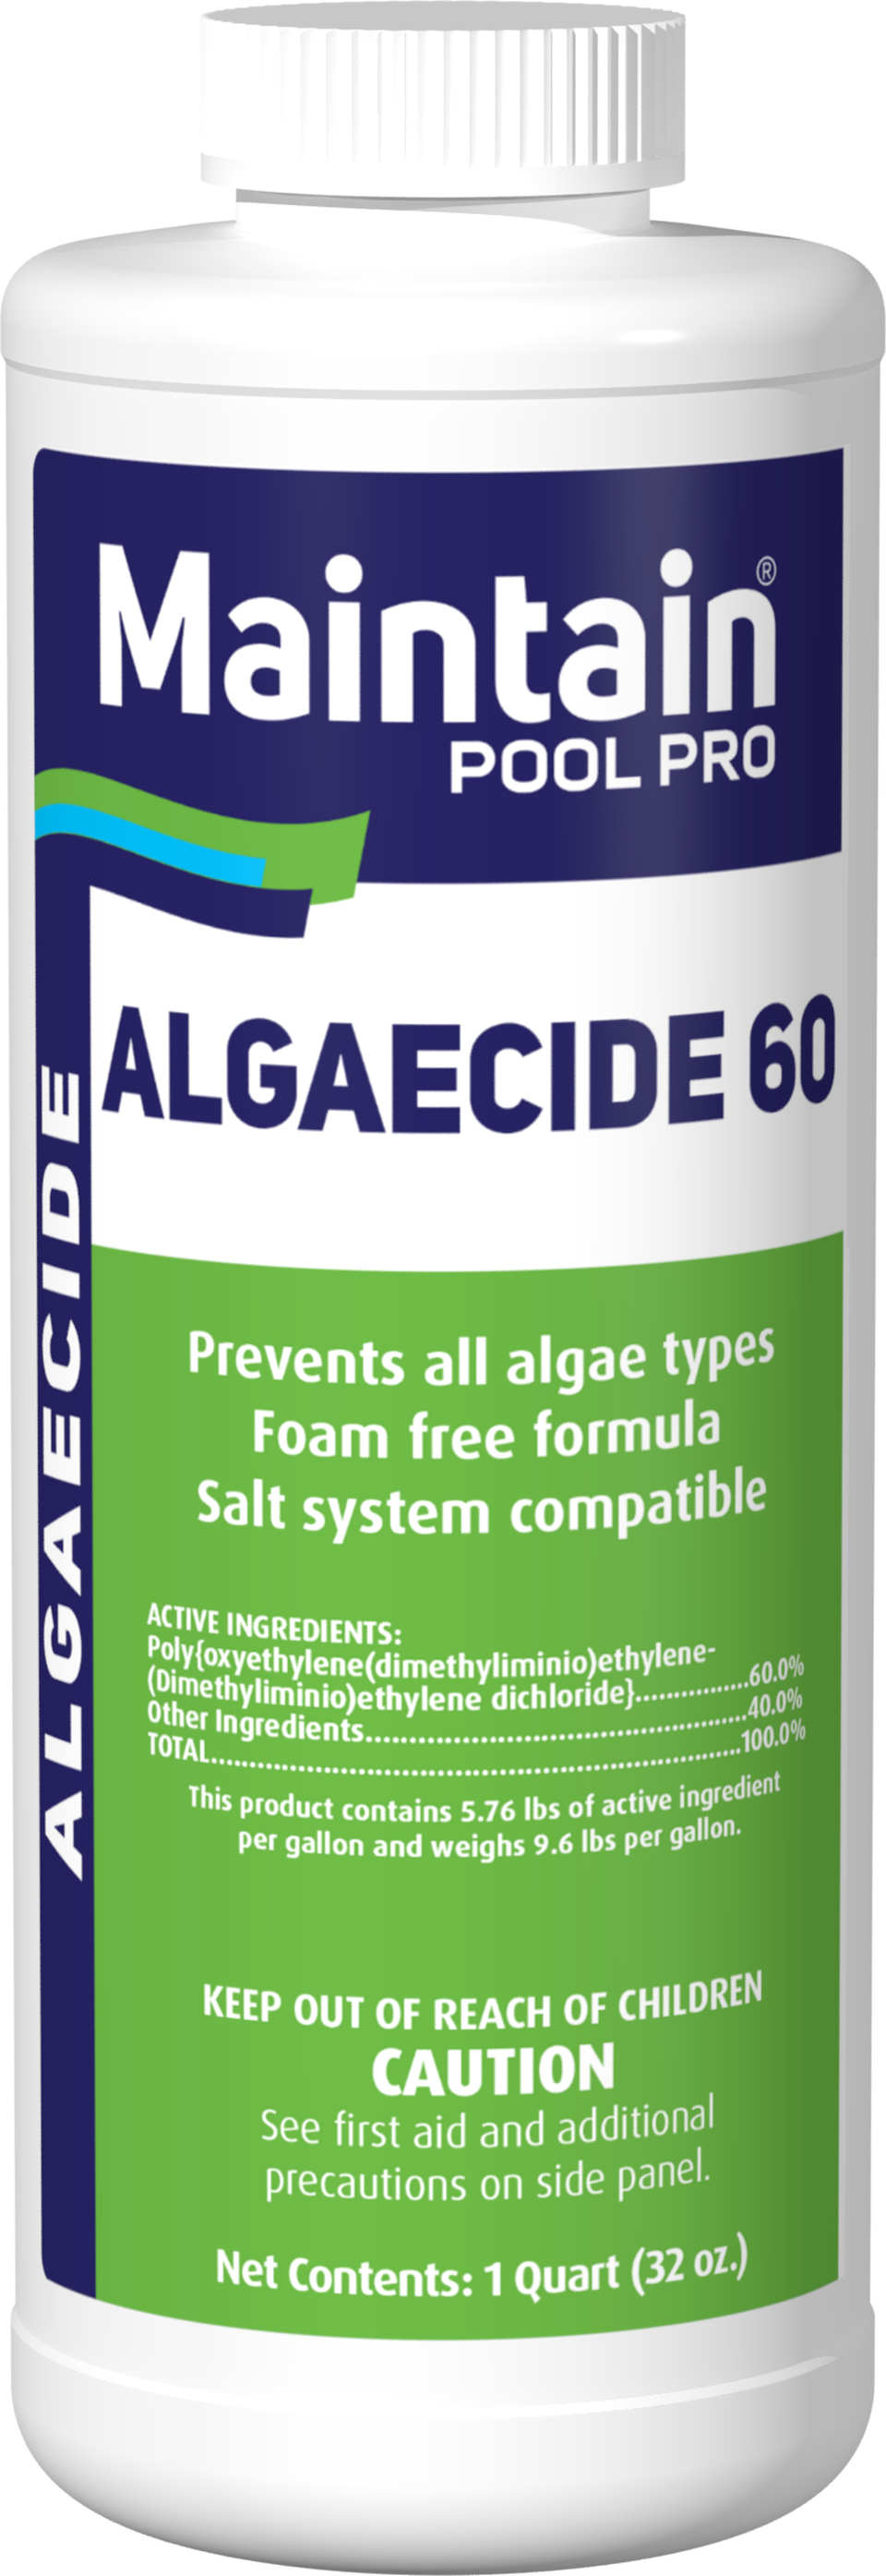 Maintain Algaecide 60